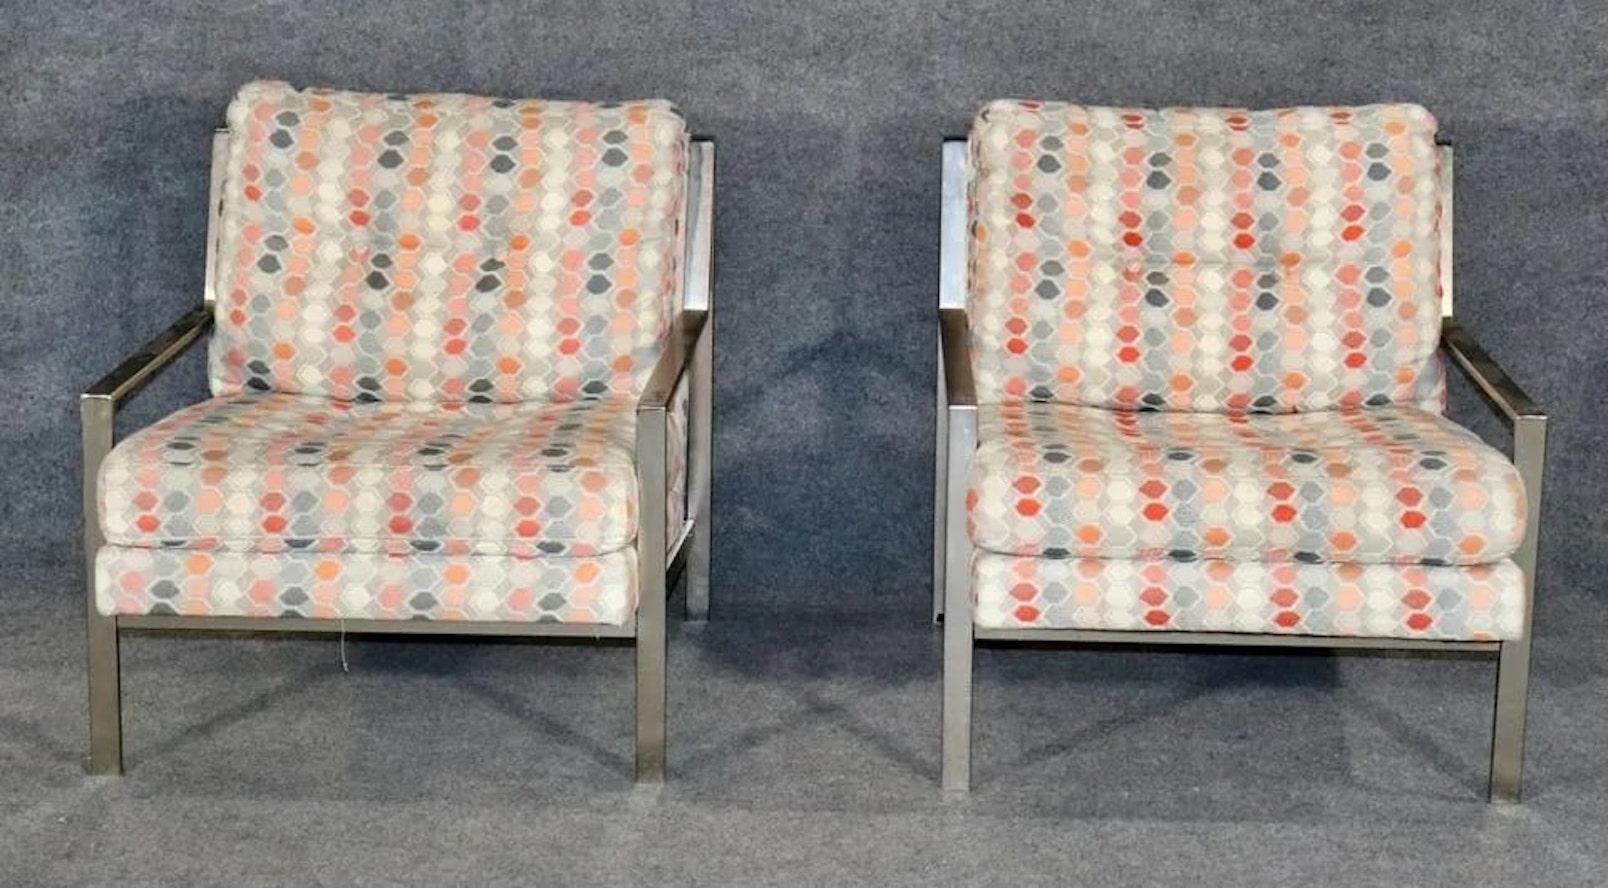 Paire de chaises cubiques modernes du milieu du siècle par Thayer Coggin. Conçue par Milo Baughman avec de larges barres en chrome poli qui se déforment et s'inclinent en haut. Un style et un confort exceptionnels pour la maison ou le